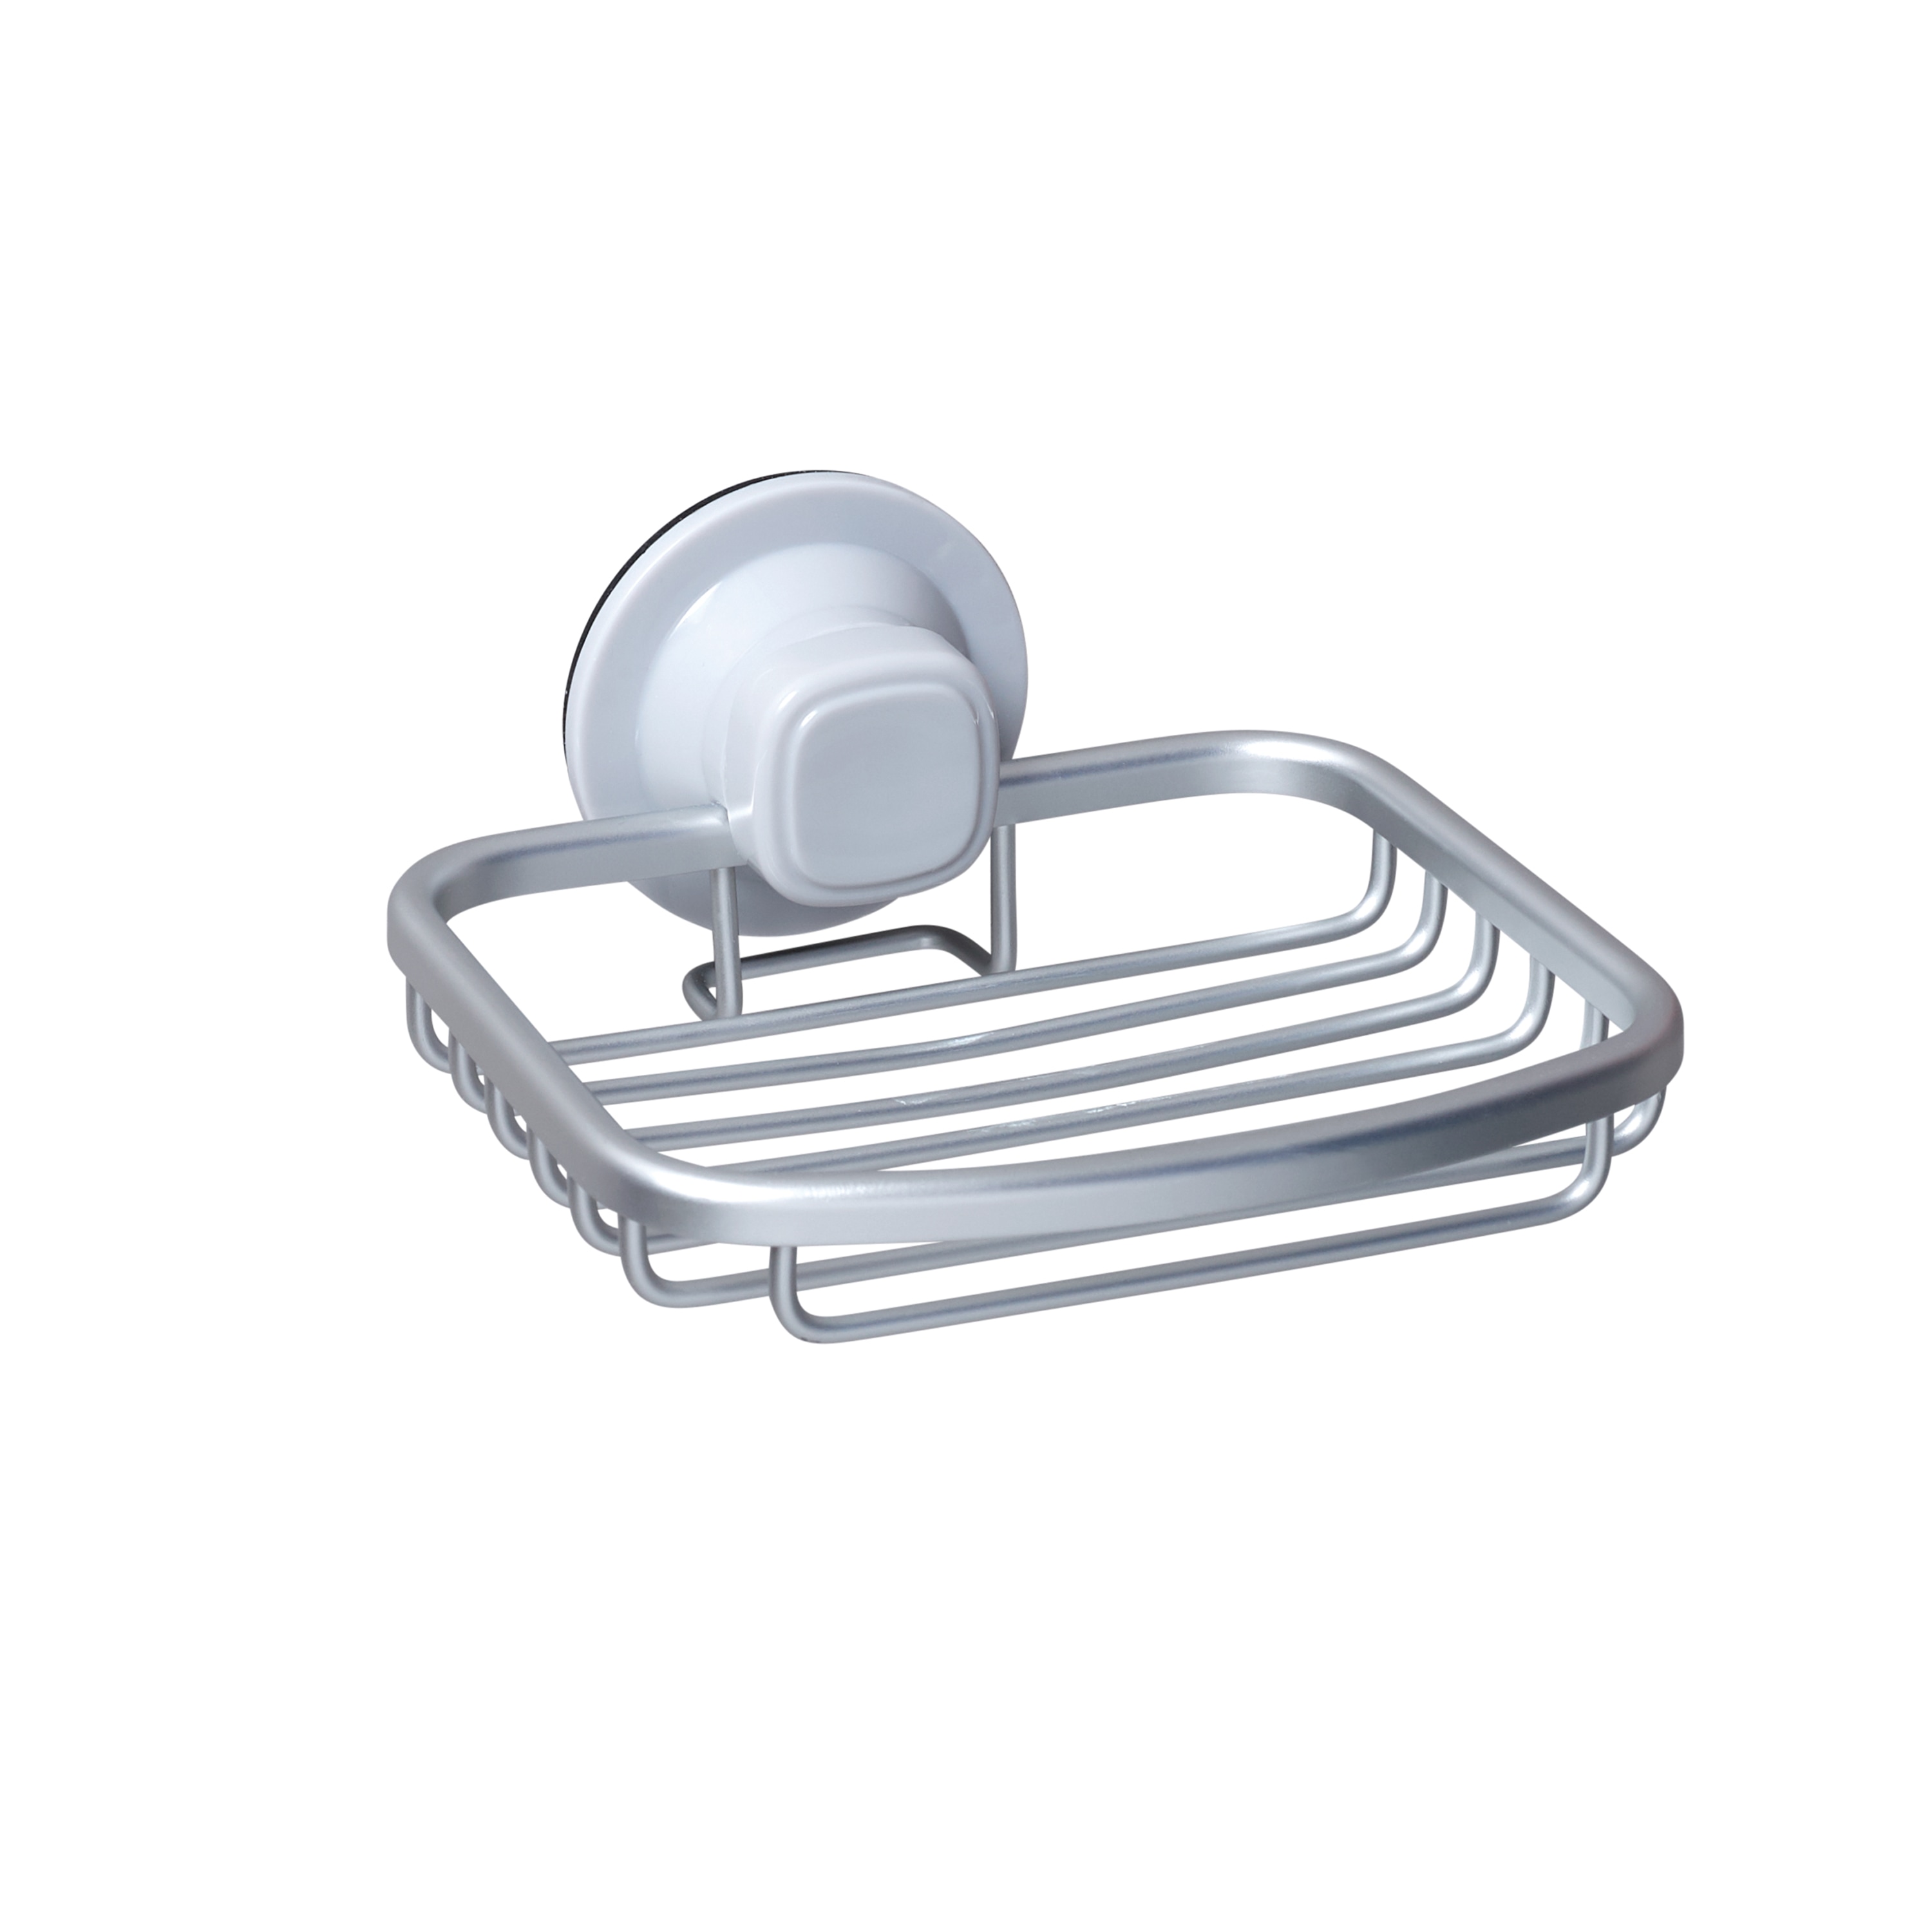 Leaf Design Soap Dish Plate Riser Rail Holder Storage Bathroom Shower 6T 